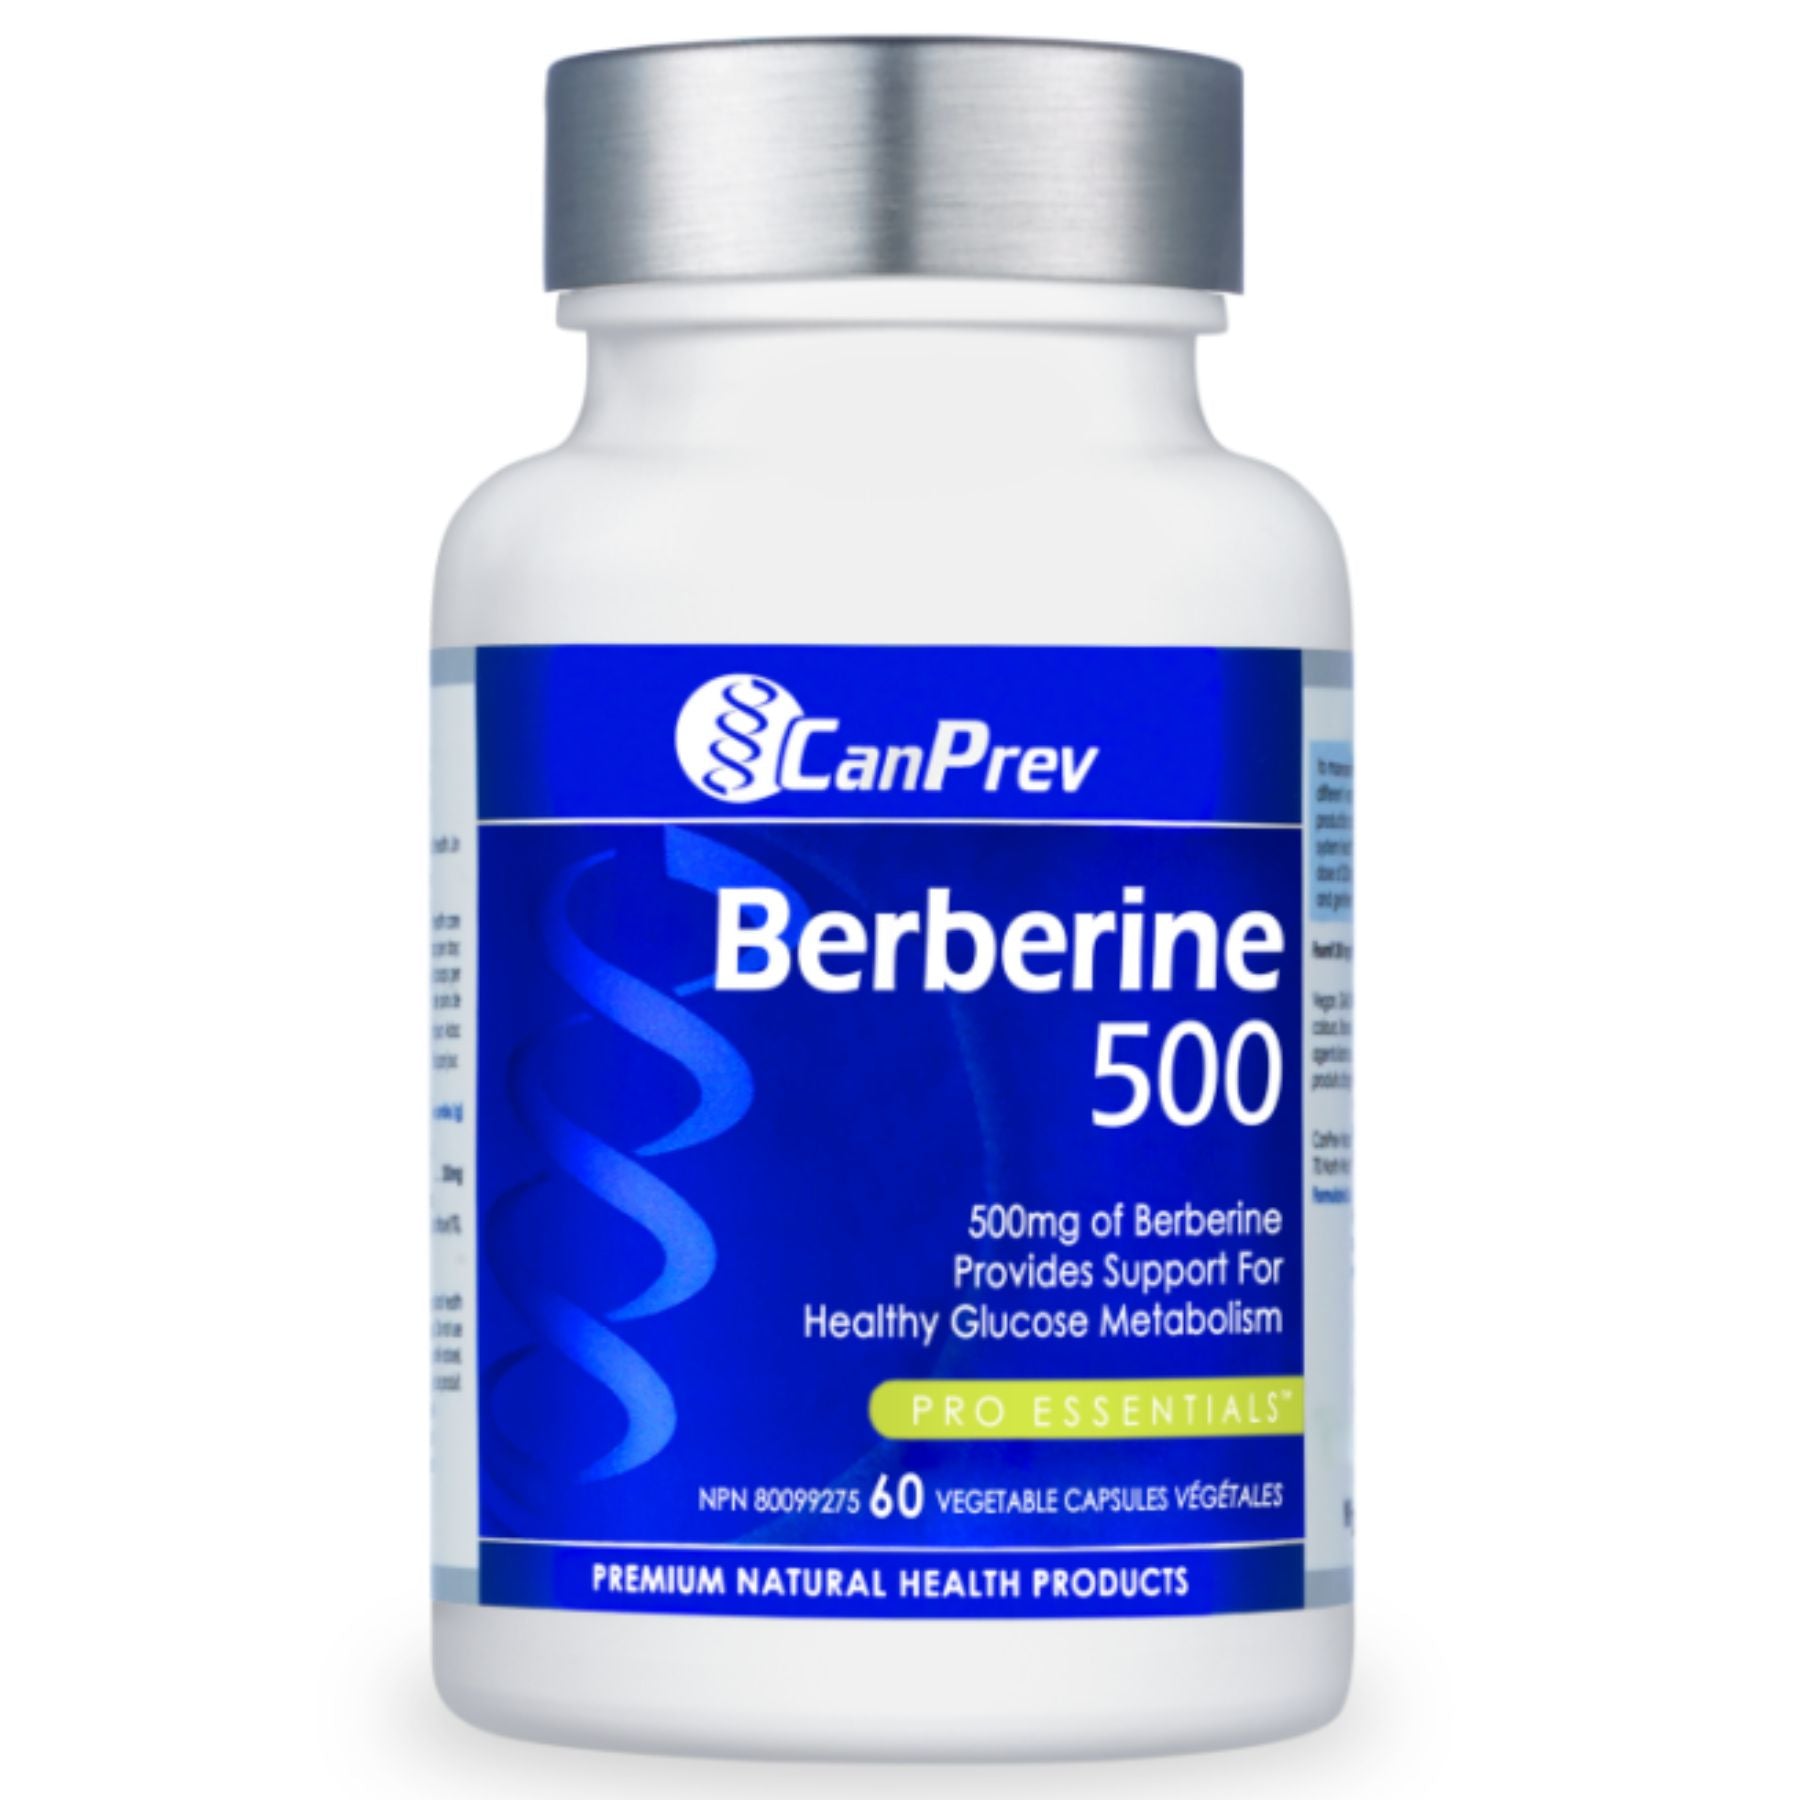 CanPrev Berberine 500 - 60s